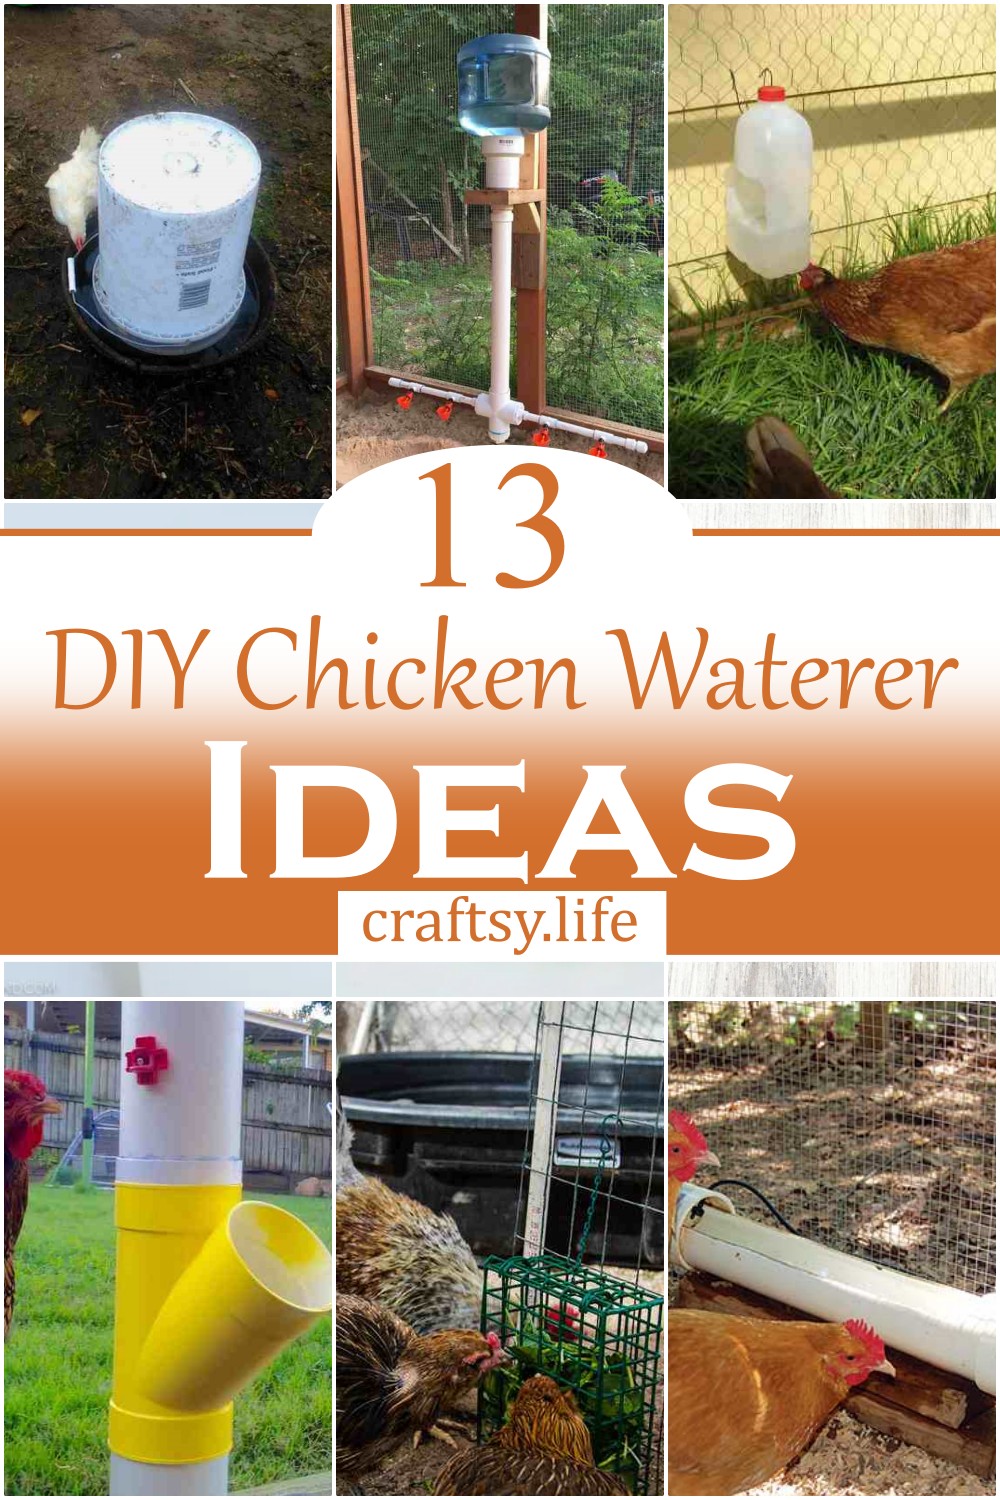 DIY Chicken Waterer Ideas 1